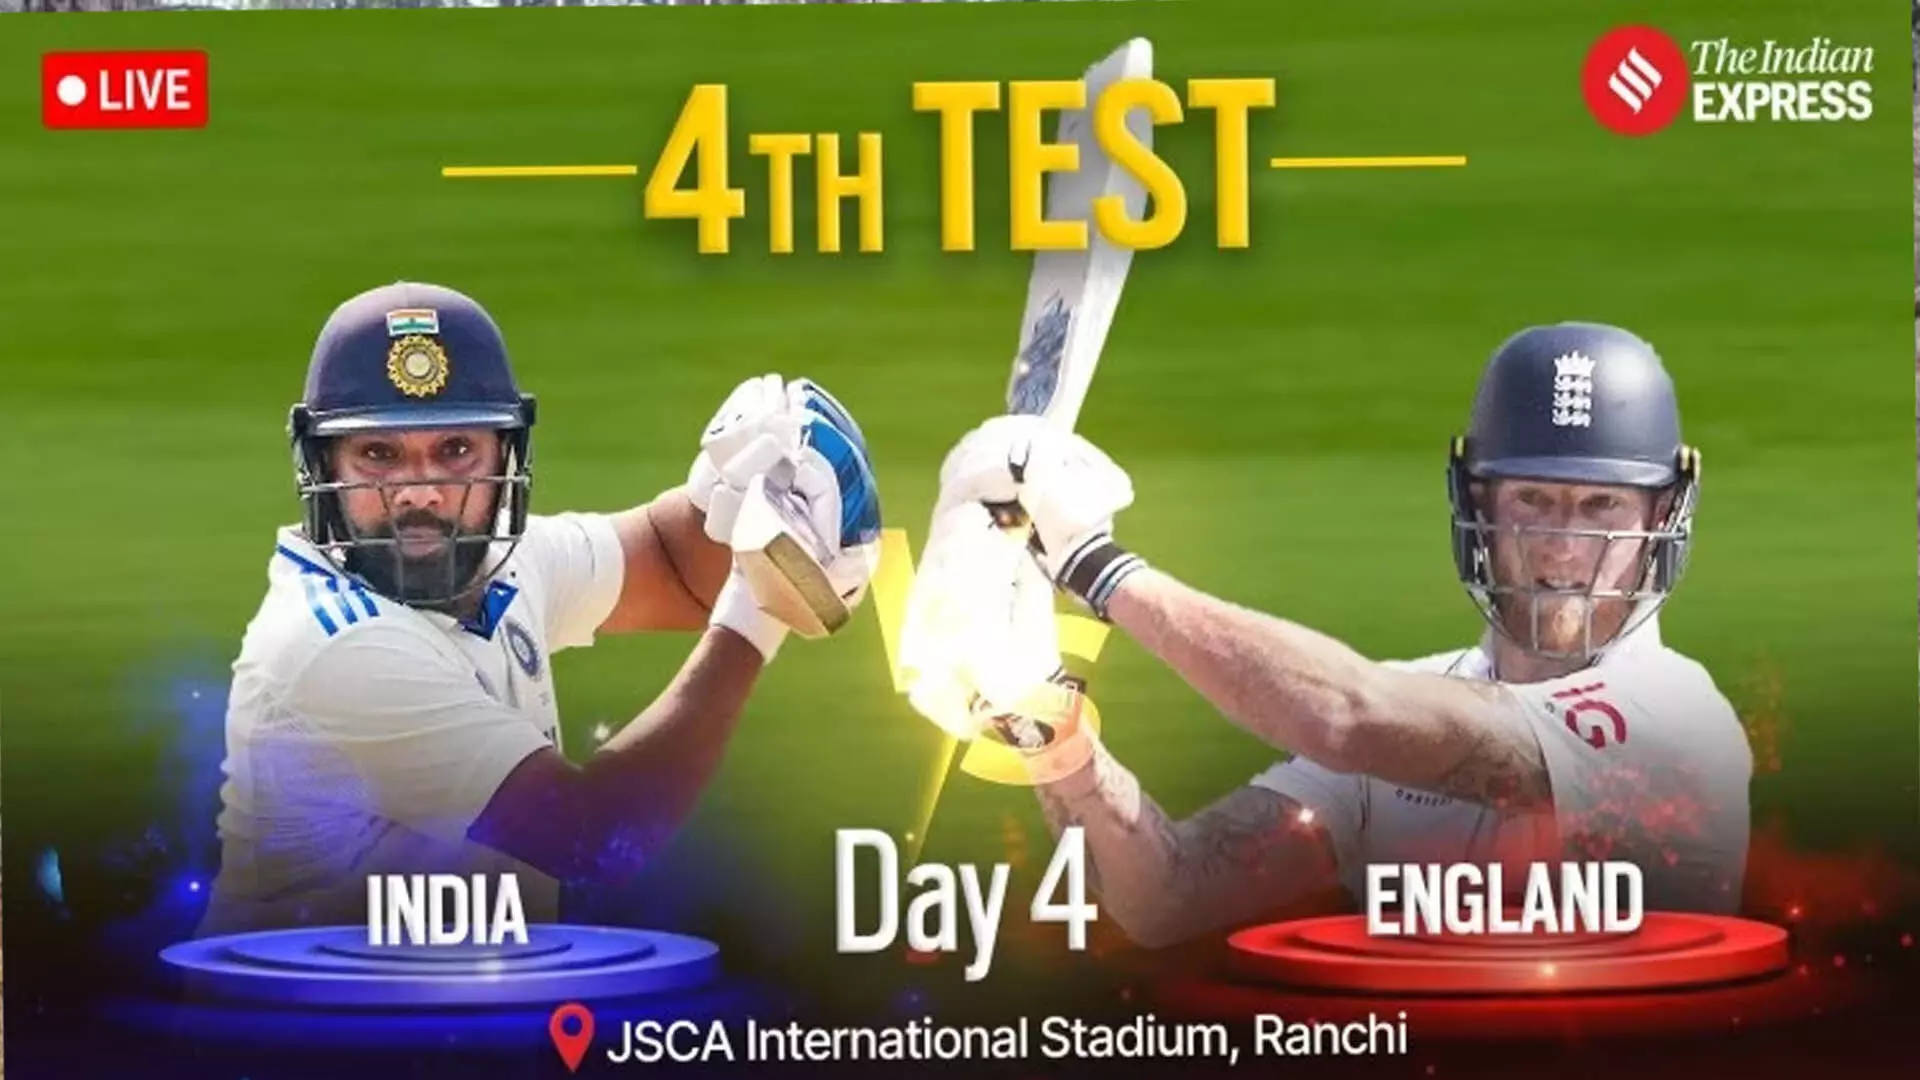 IND vs ENG LIVE स्कोर, चौथा टेस्ट दिन 4: भारत 40/0, जीत के लिए 152 रन; इंग्लैंड के खिलाफ फोकस में रोहित-जायसवाल